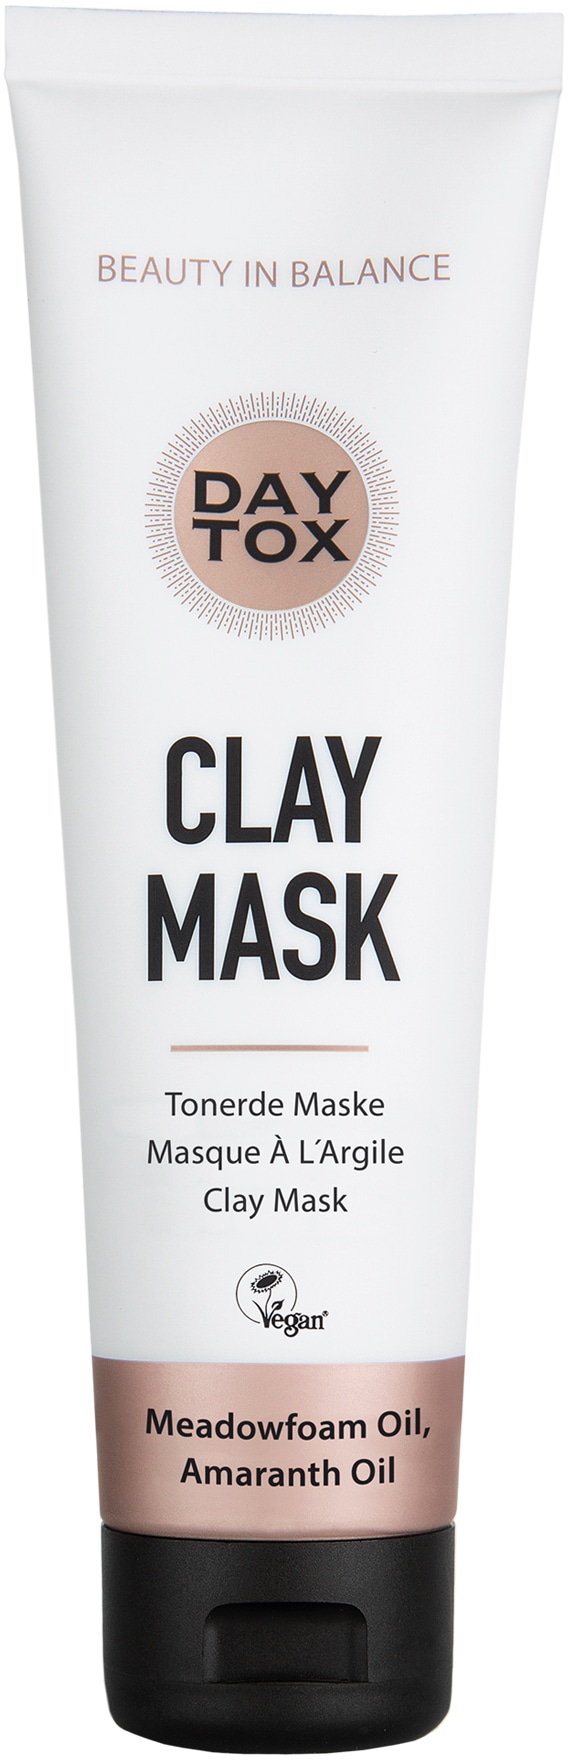 DAYTOX Gesichtsmaske »Daytox Clay Mask«